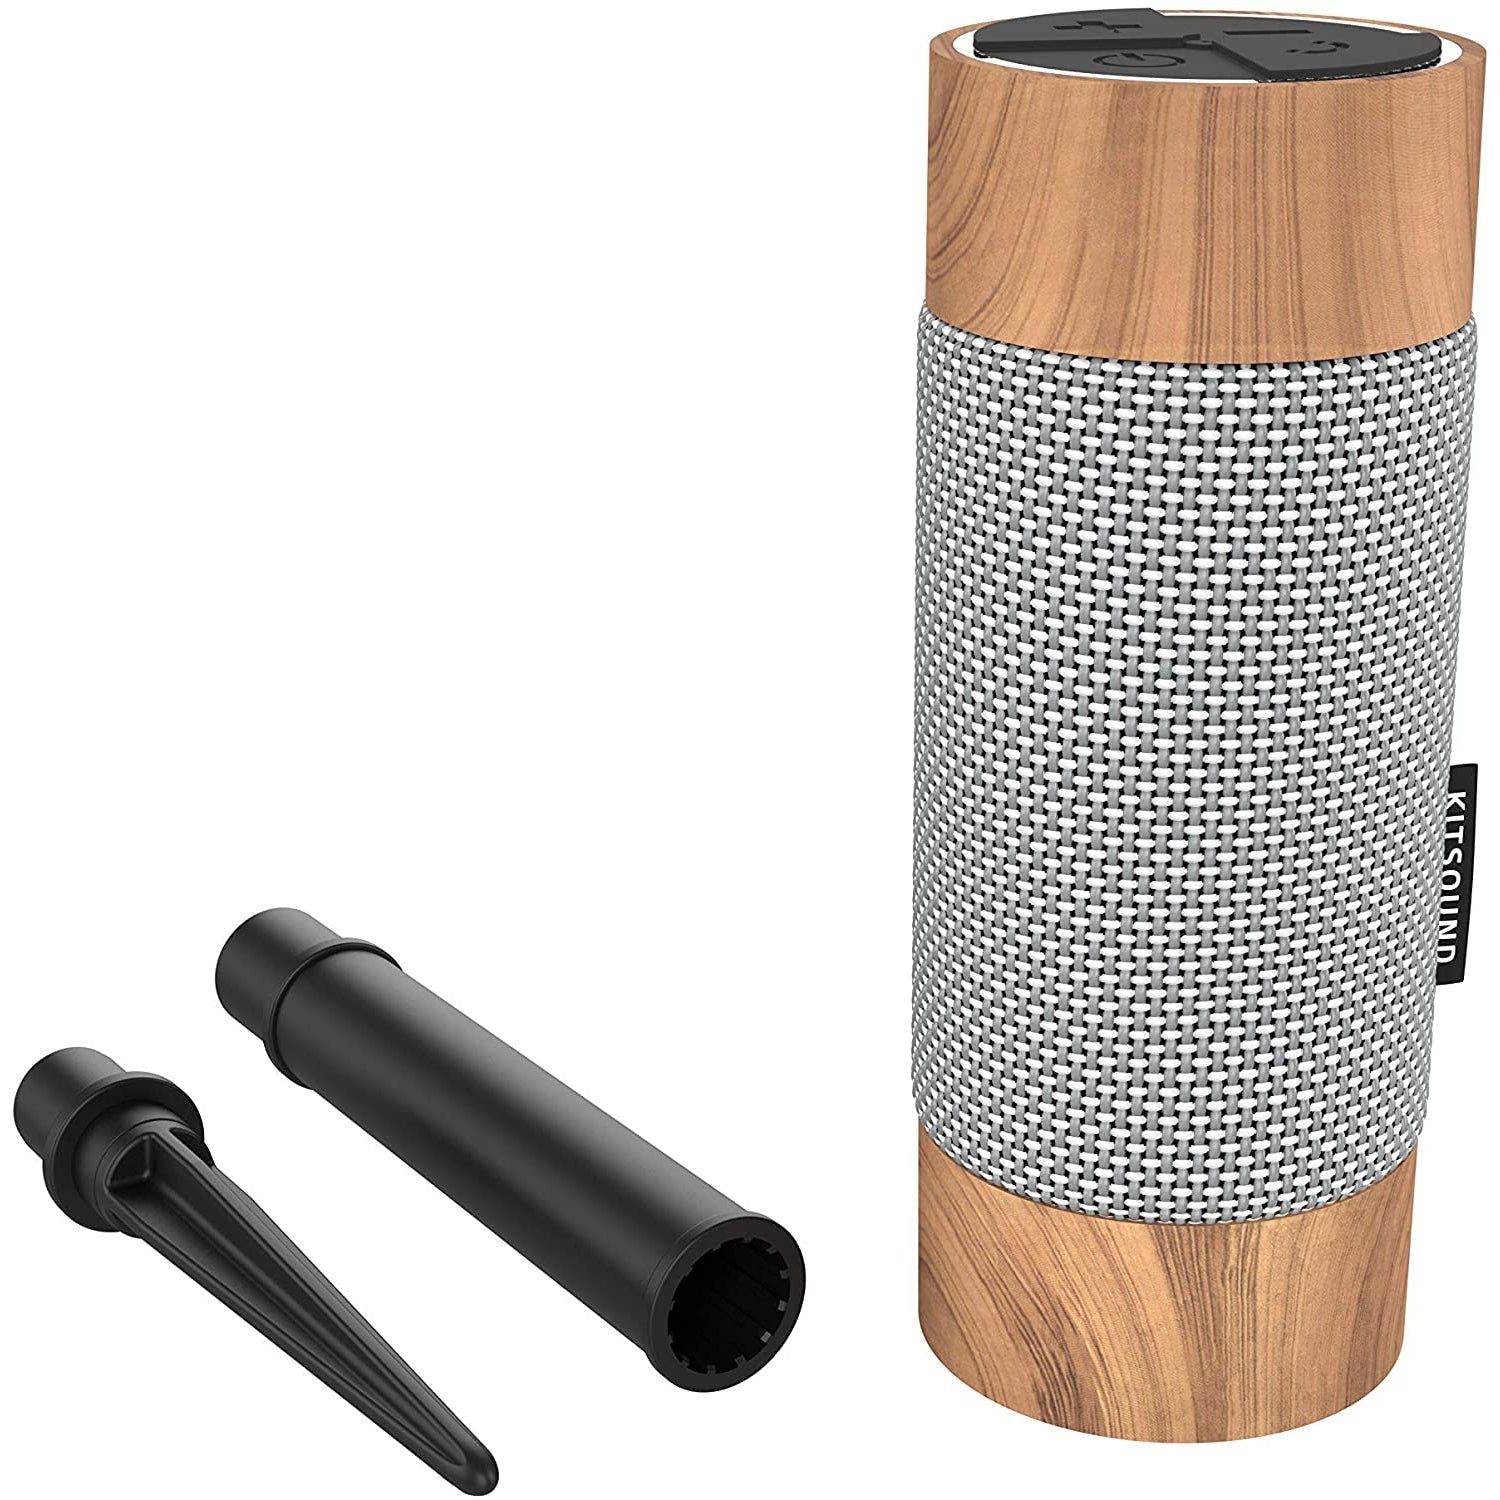 KitSound Diggit Outdoor Bluetooth Garden Speaker. Silver/Wood - Refurbished Excellent